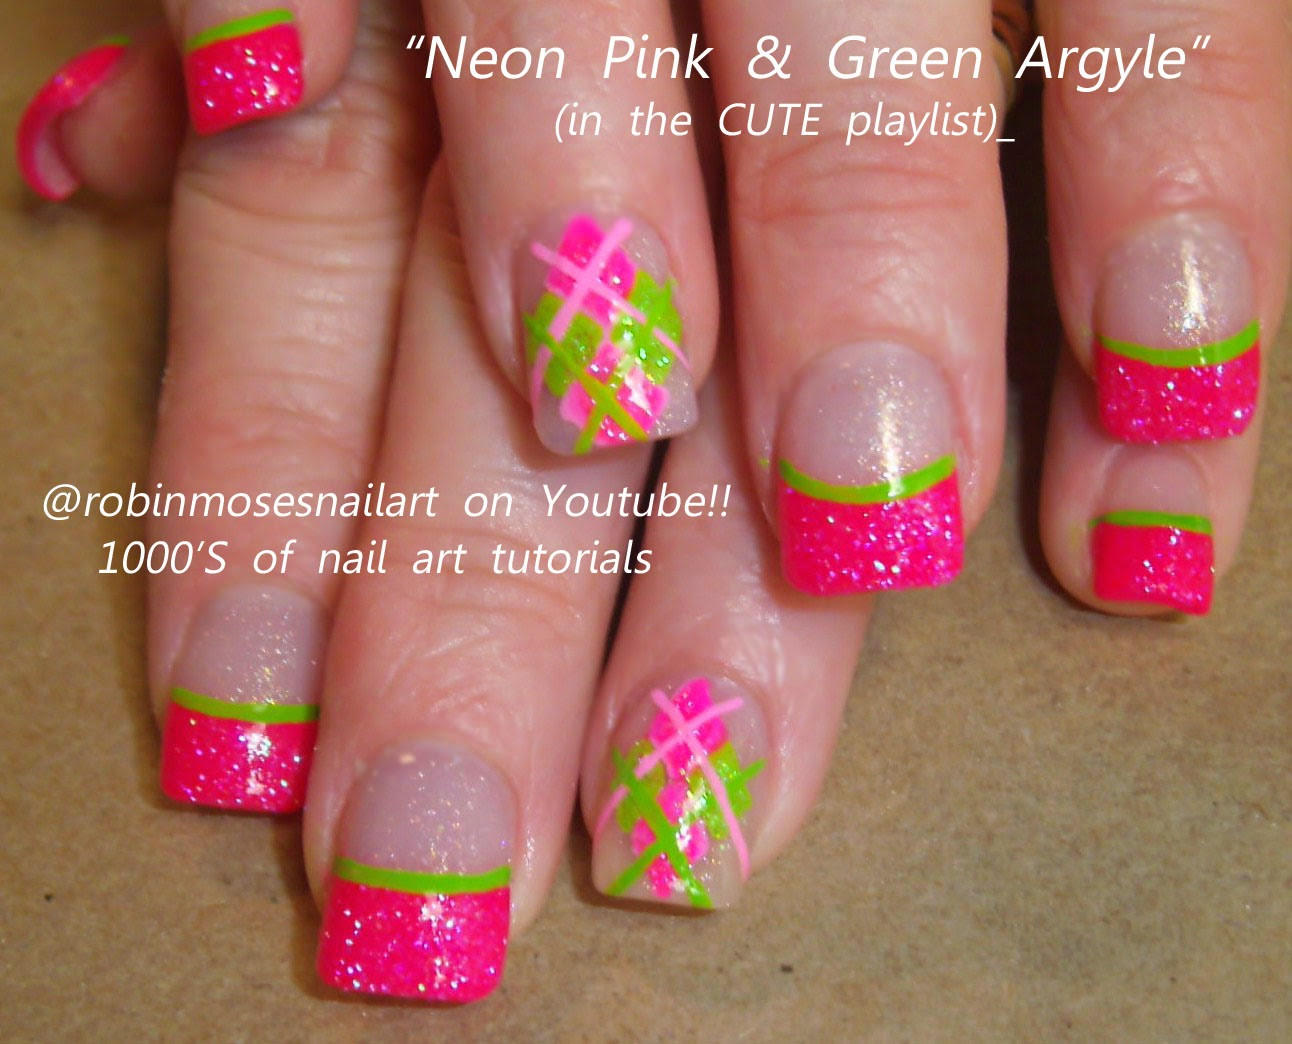 Neon Pink Nail Designs
 Robin Moses Nail Art "neon nails" "neon pink nails" "neon